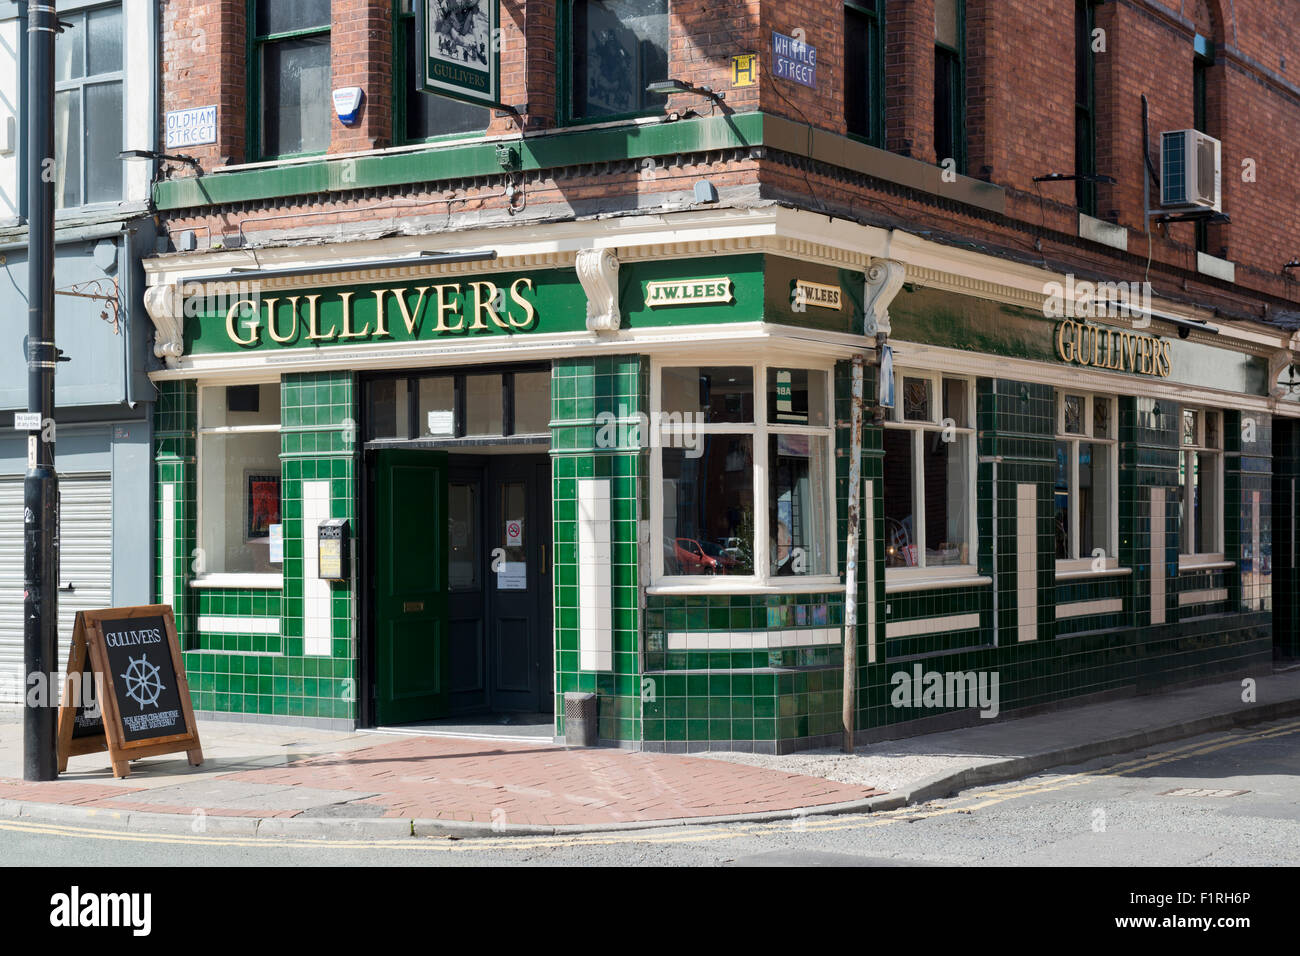 Gullivers Pub befindet sich zwischen Oldham und Tib Street in der nördlichen Viertel von Manchester. Stockfoto